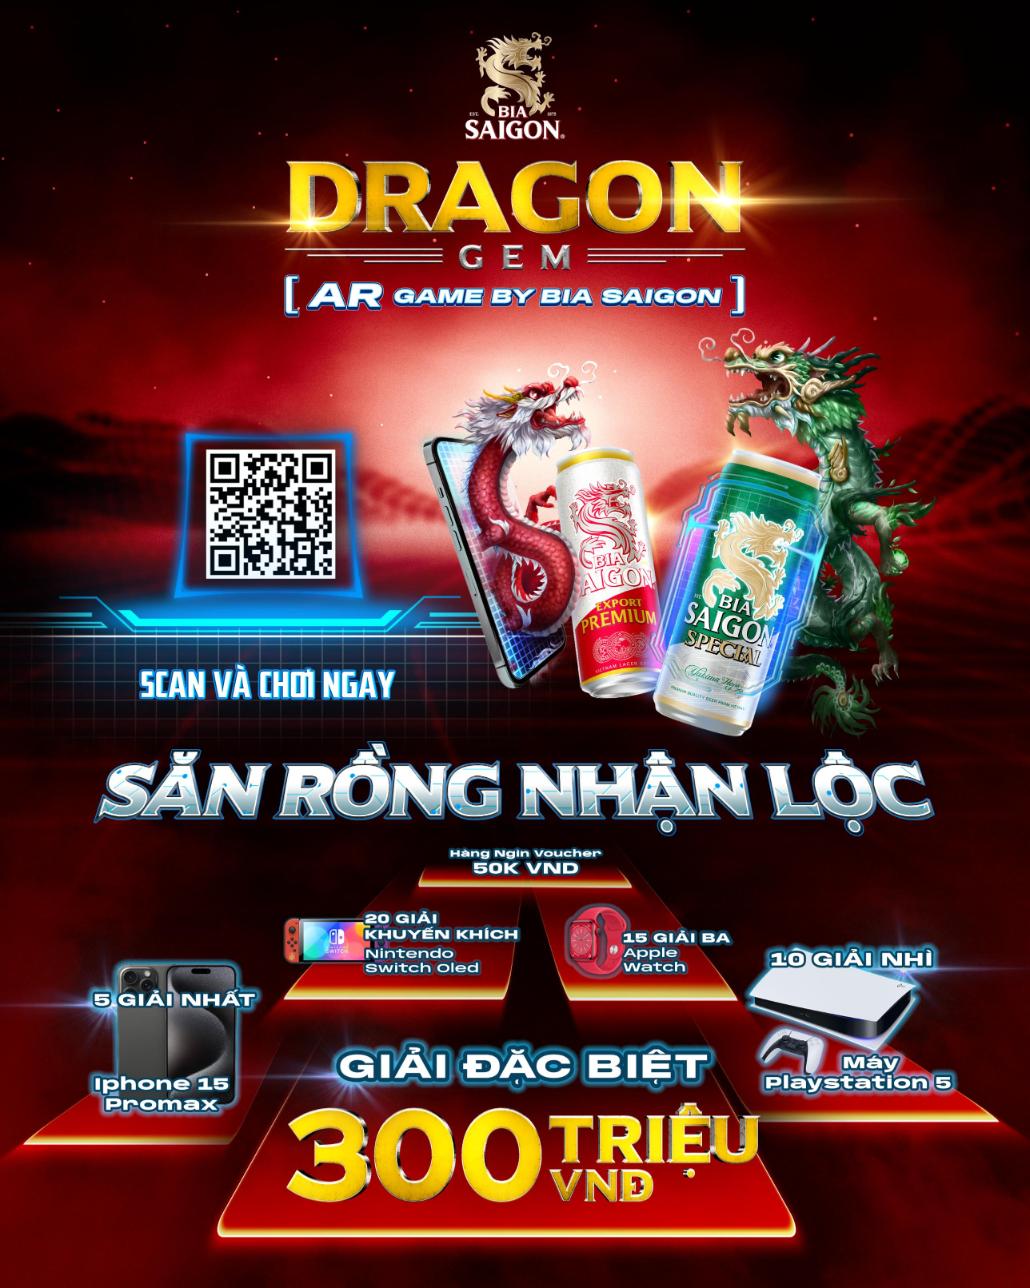 Loạt giải thưởng hấp dẫn với giá trị lên đến 15 tỷ đồng là một trong những yếu tố thu hút người chơi  Bia Saigon ra mắt AR Game săn rồng với tổng giải thưởng lên đến 1,5 tỉ đồng